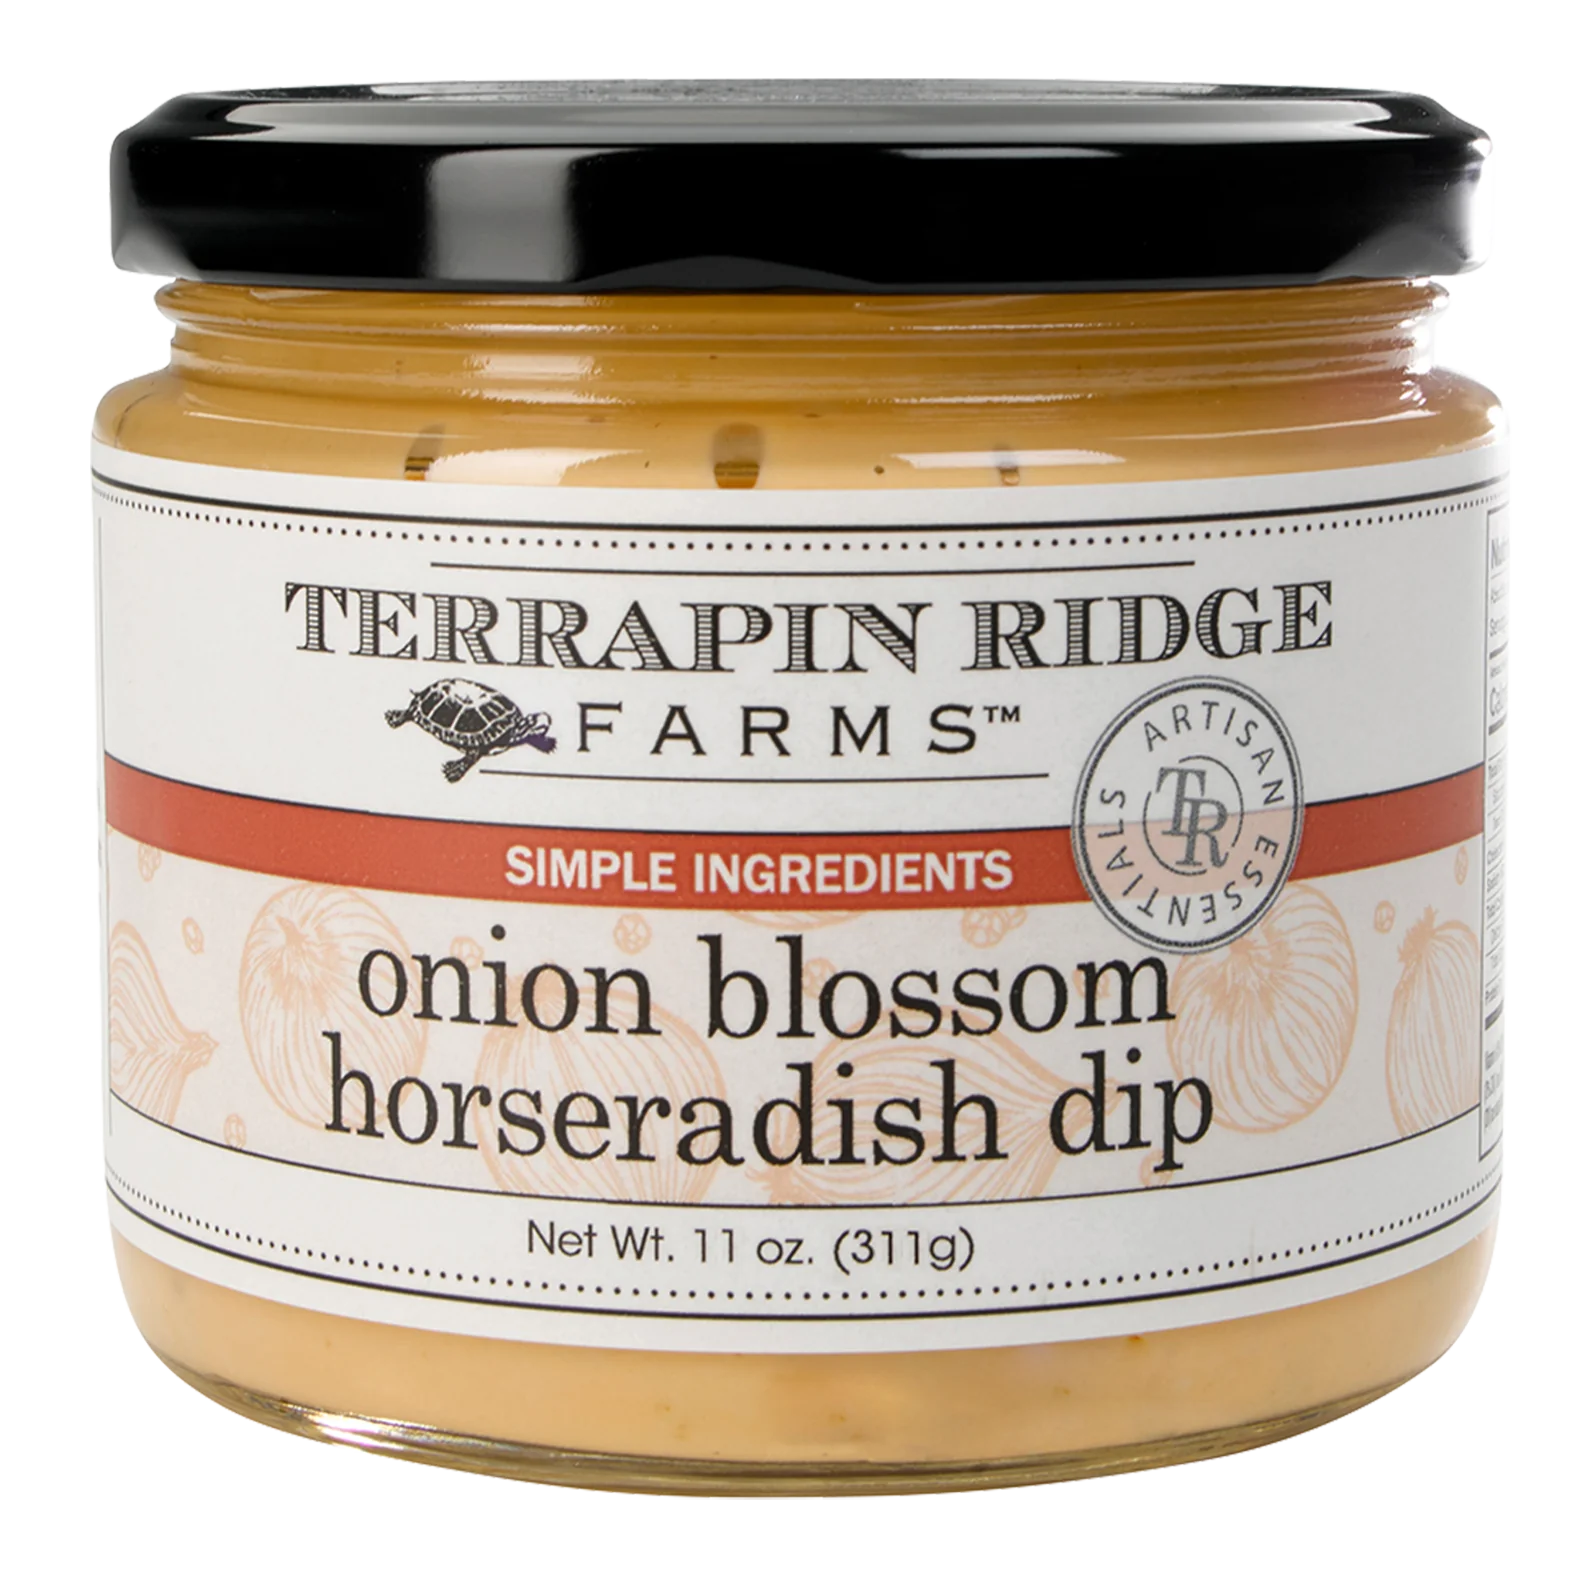 Terrapin Ridge Onion Blossom Horseradish Dip.